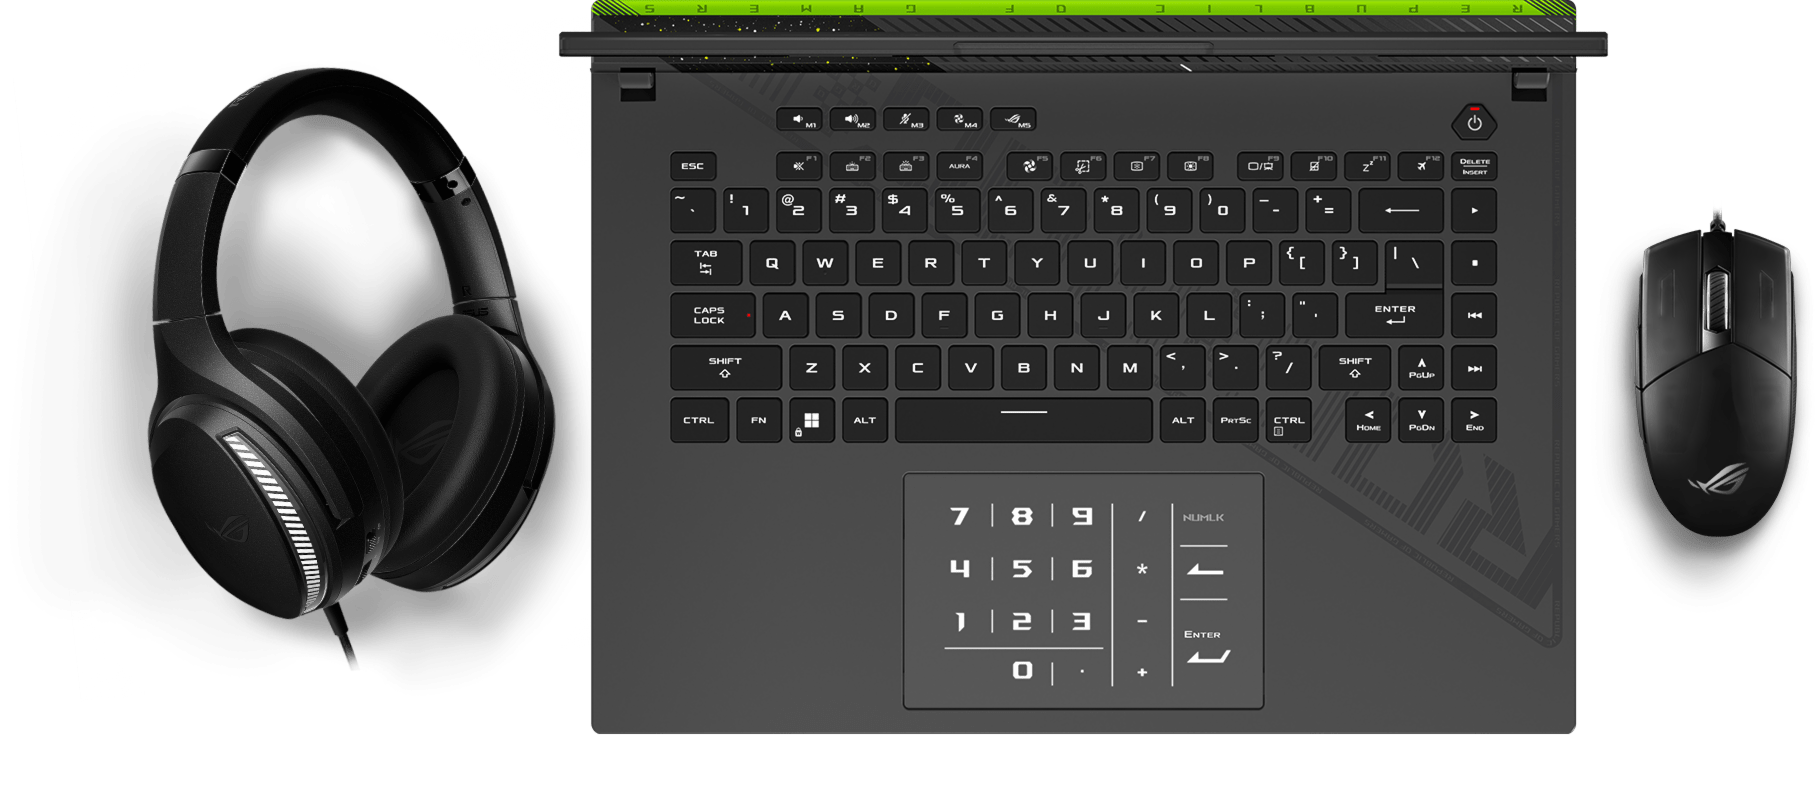 Une vue du clavier, montrant les effets lumineux Aura synchronisés avec une souris et un casque.